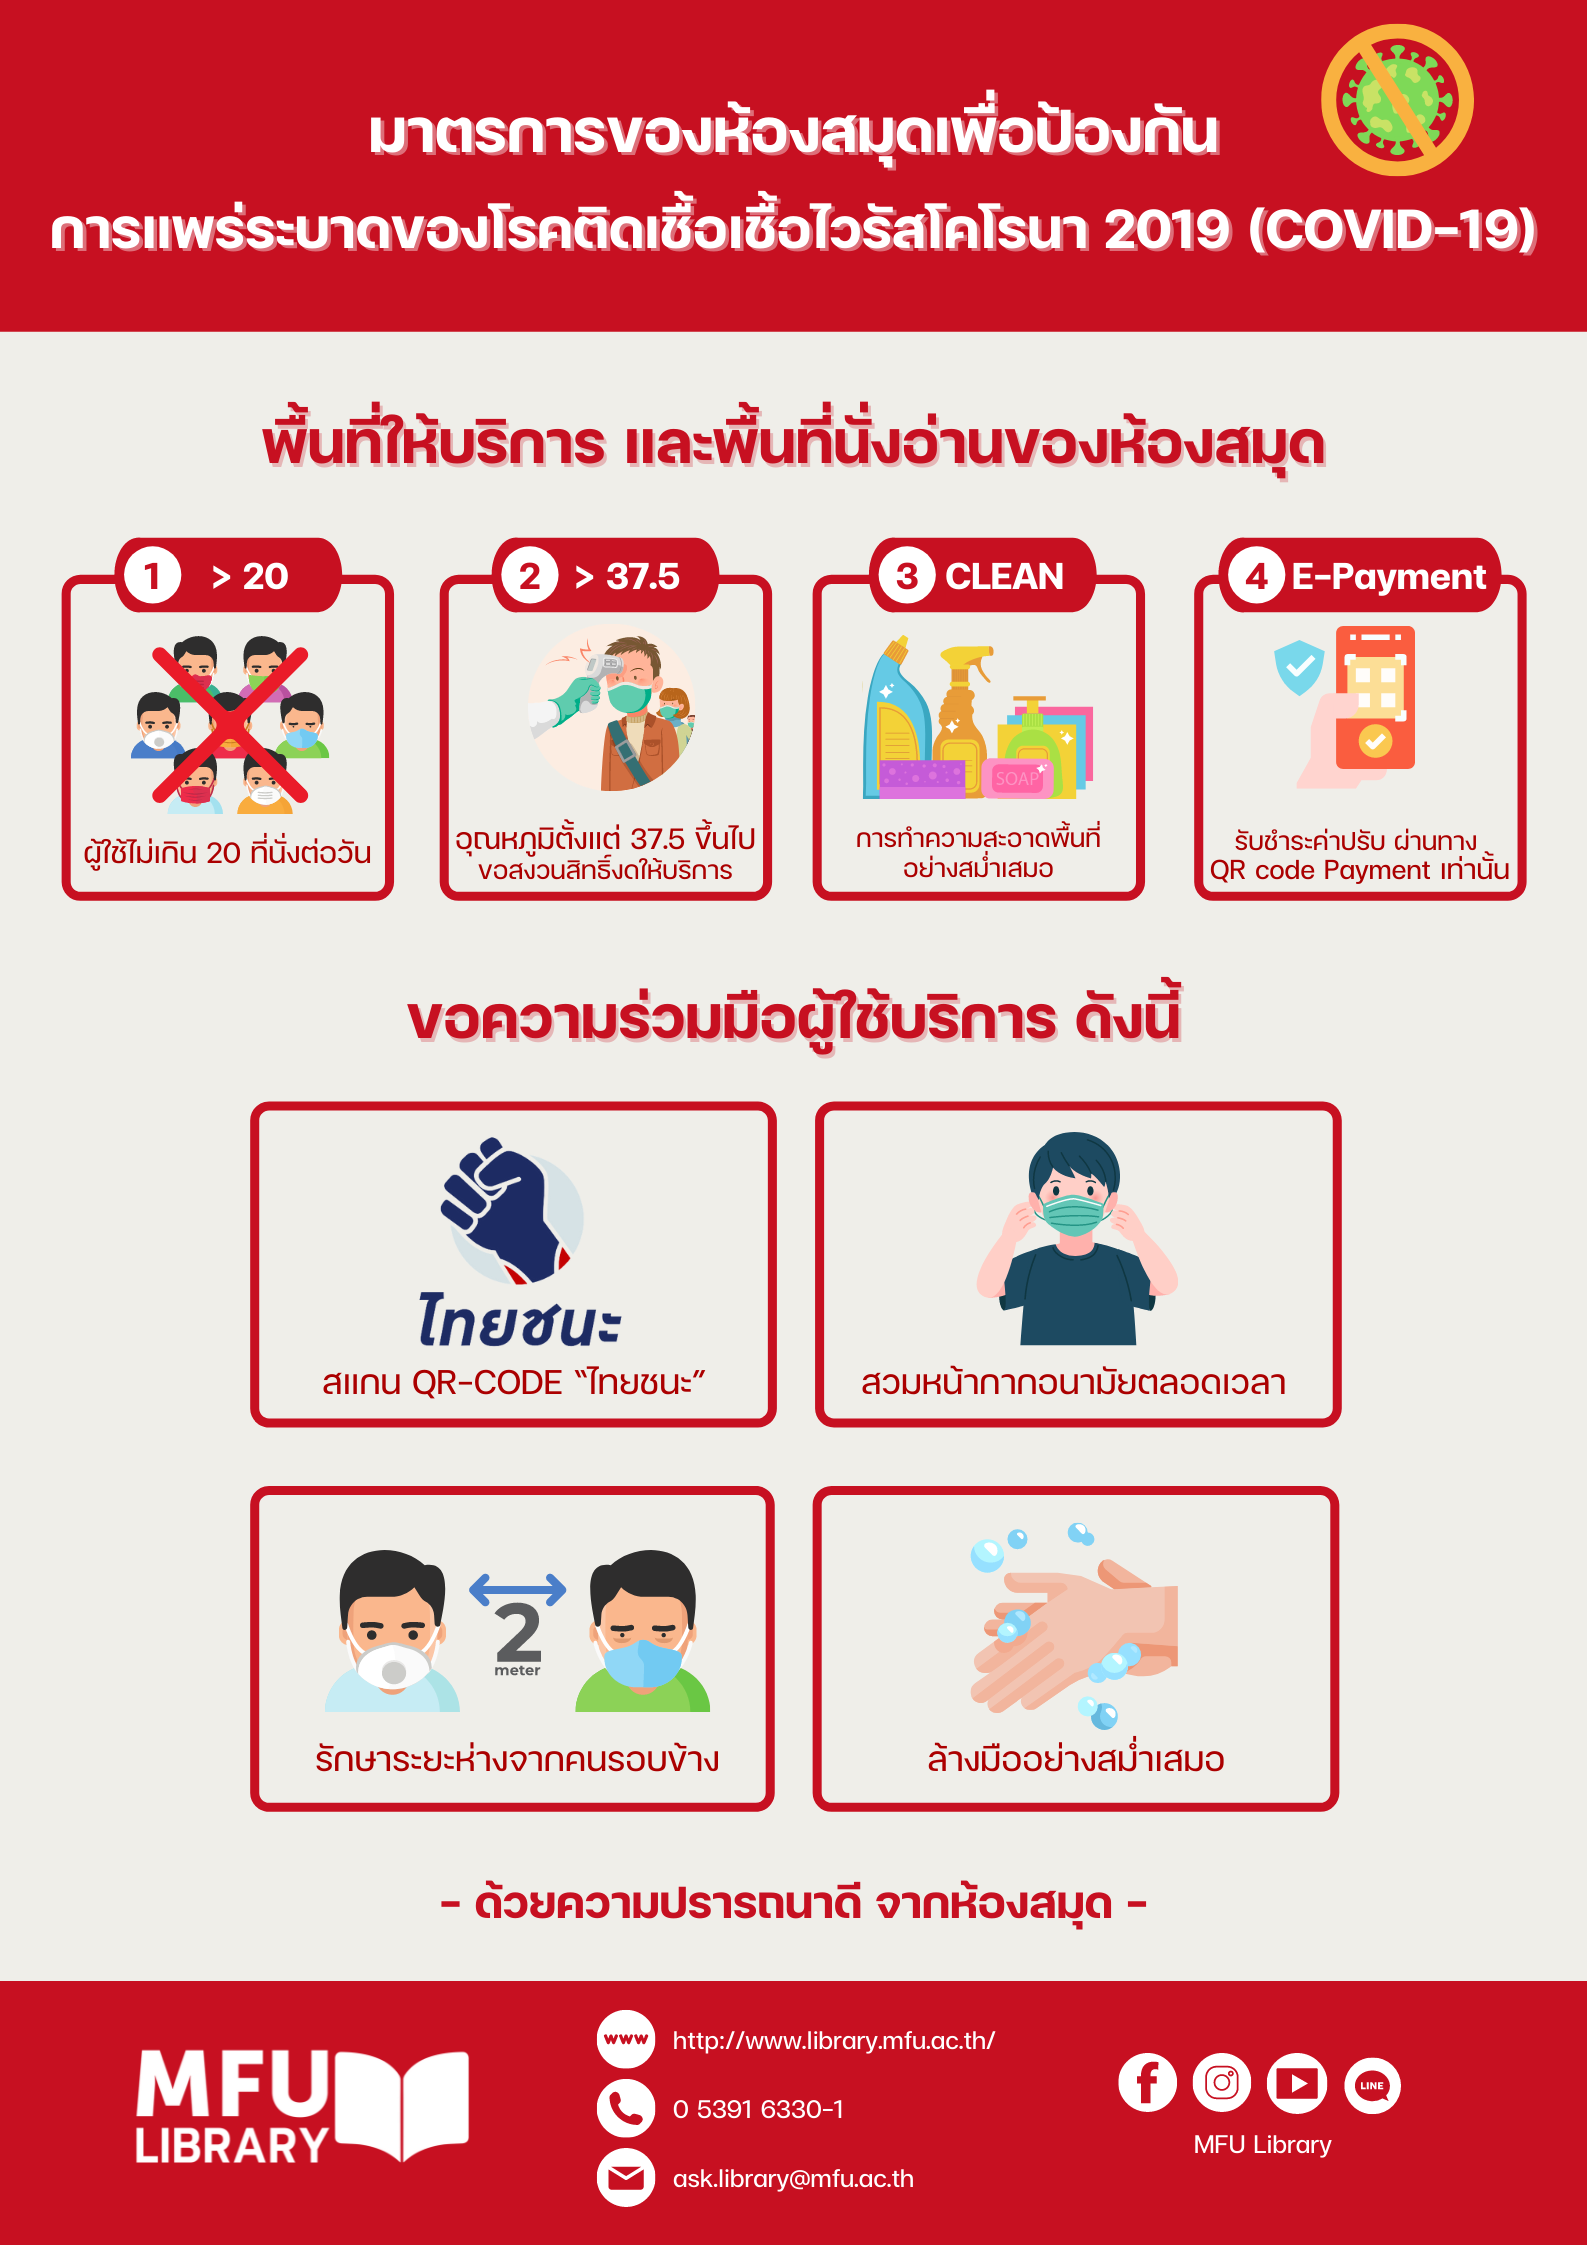 มาตรการป้องกันการแพร่ระบาดของเชื้อไวรัสโคโรนา 2019 (1)